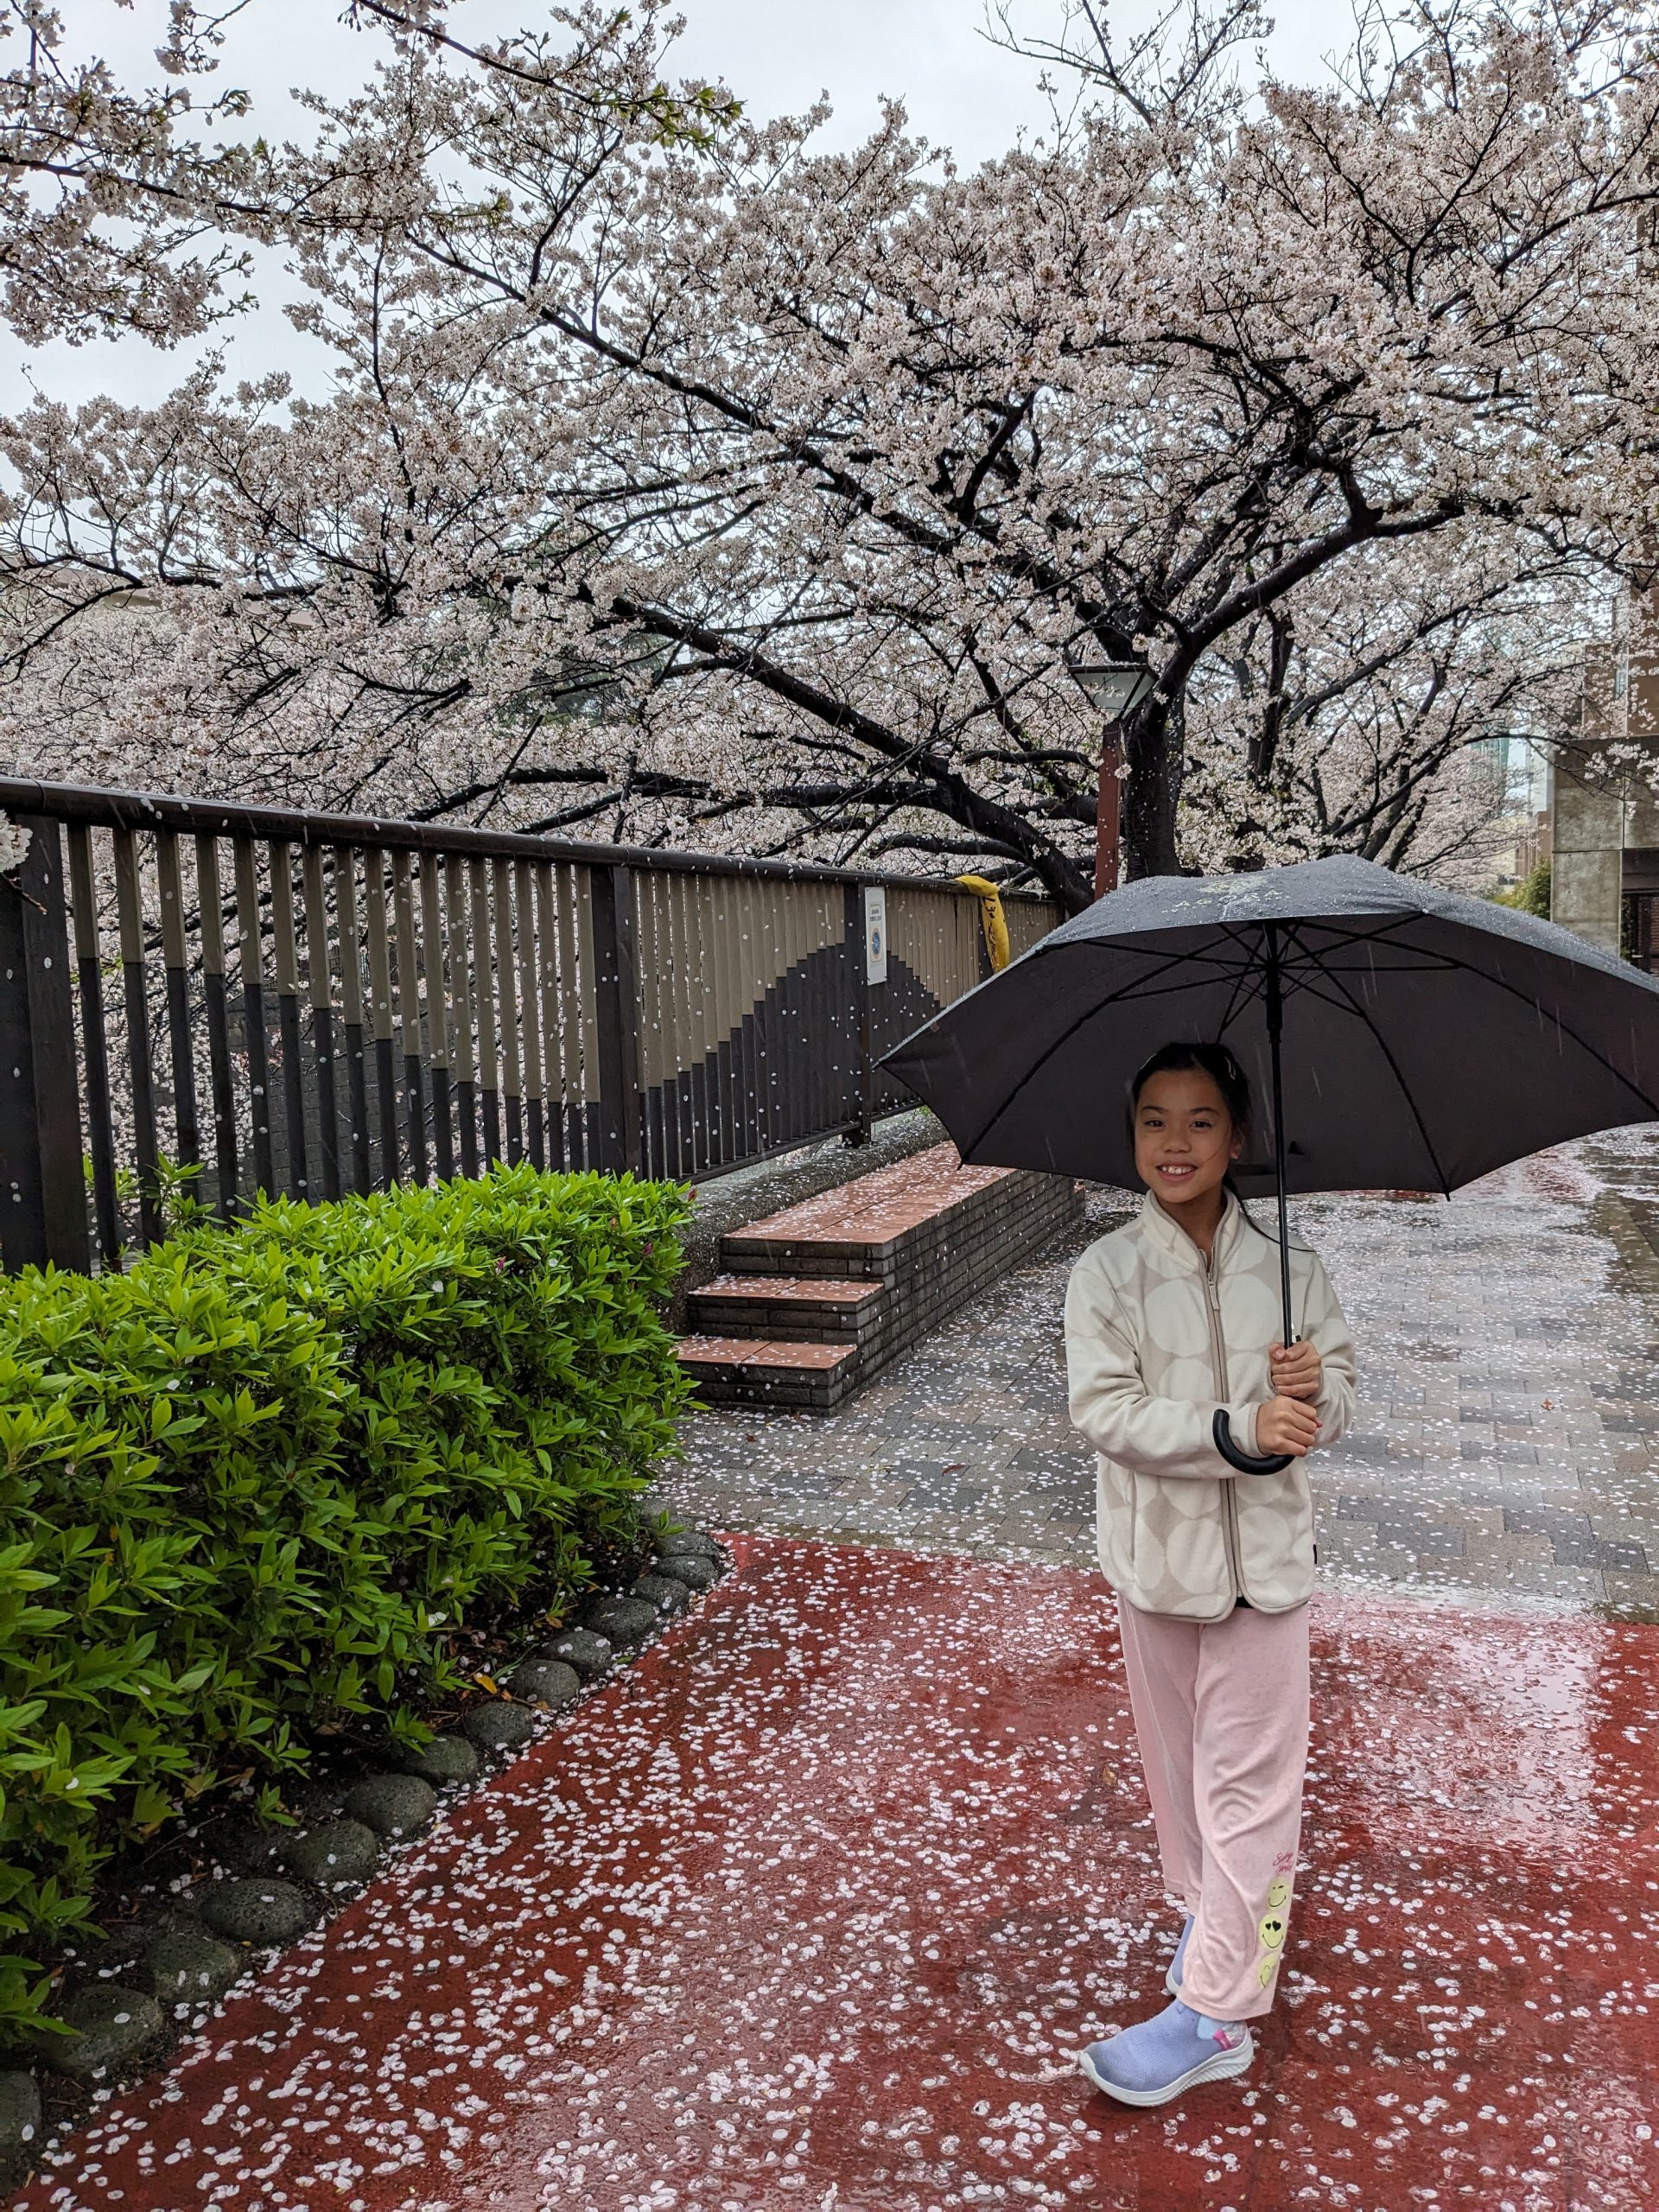 Cara visiting the blossoms